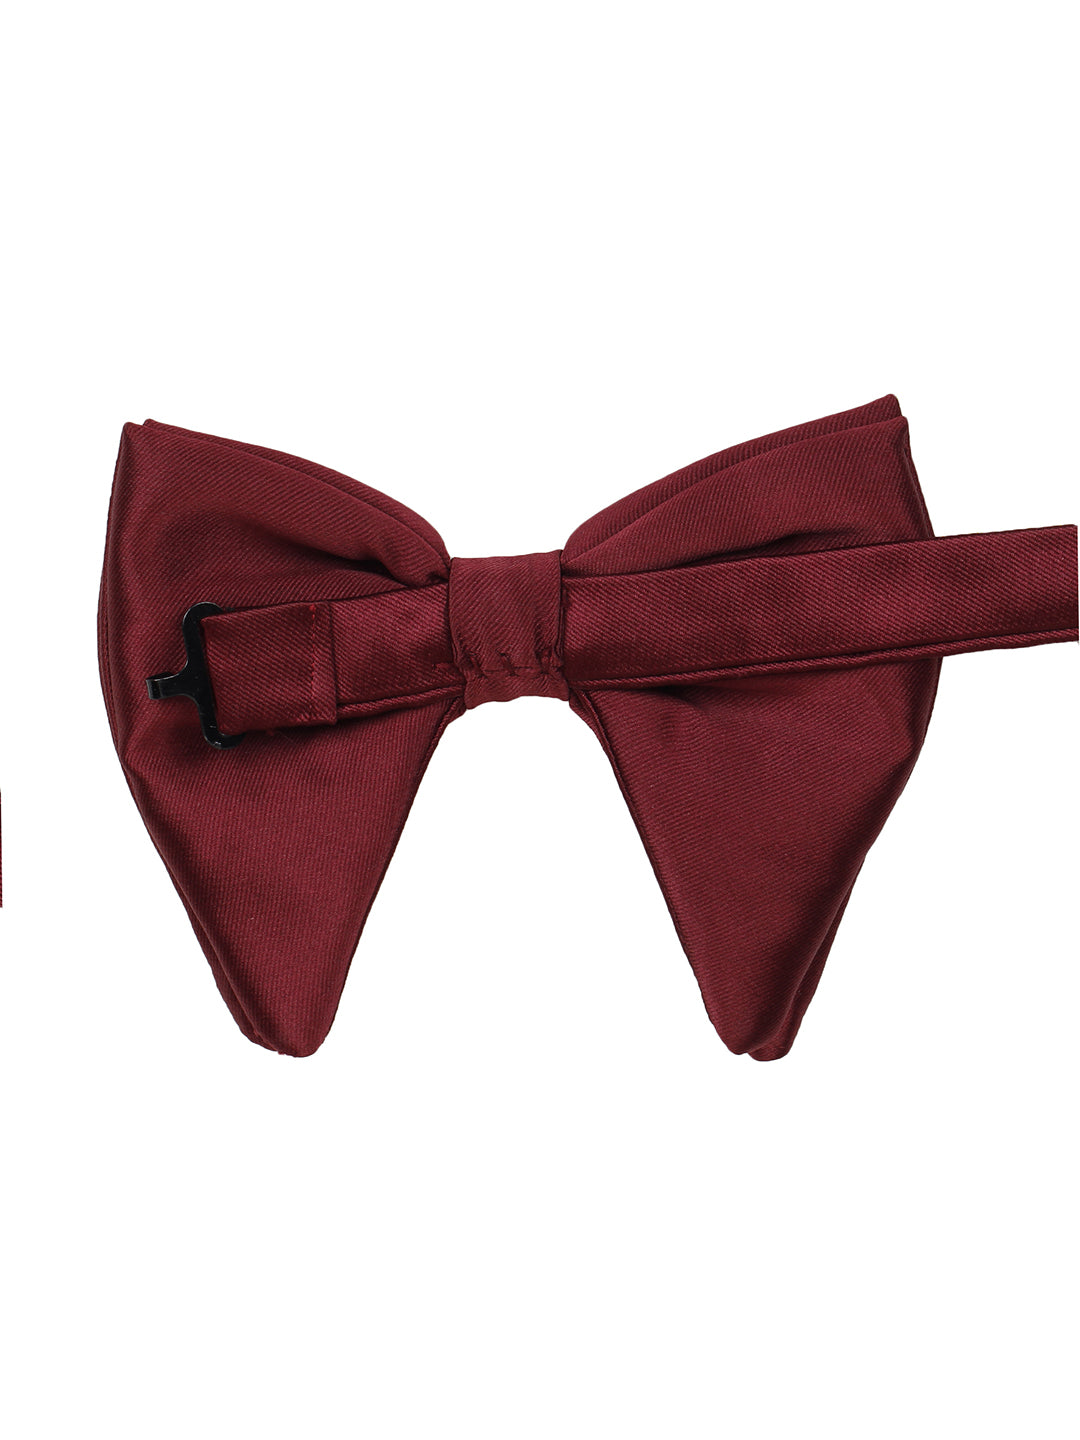 Alvaro Castagnino Men's Maroon Colored Floppy Solid Bow Tie